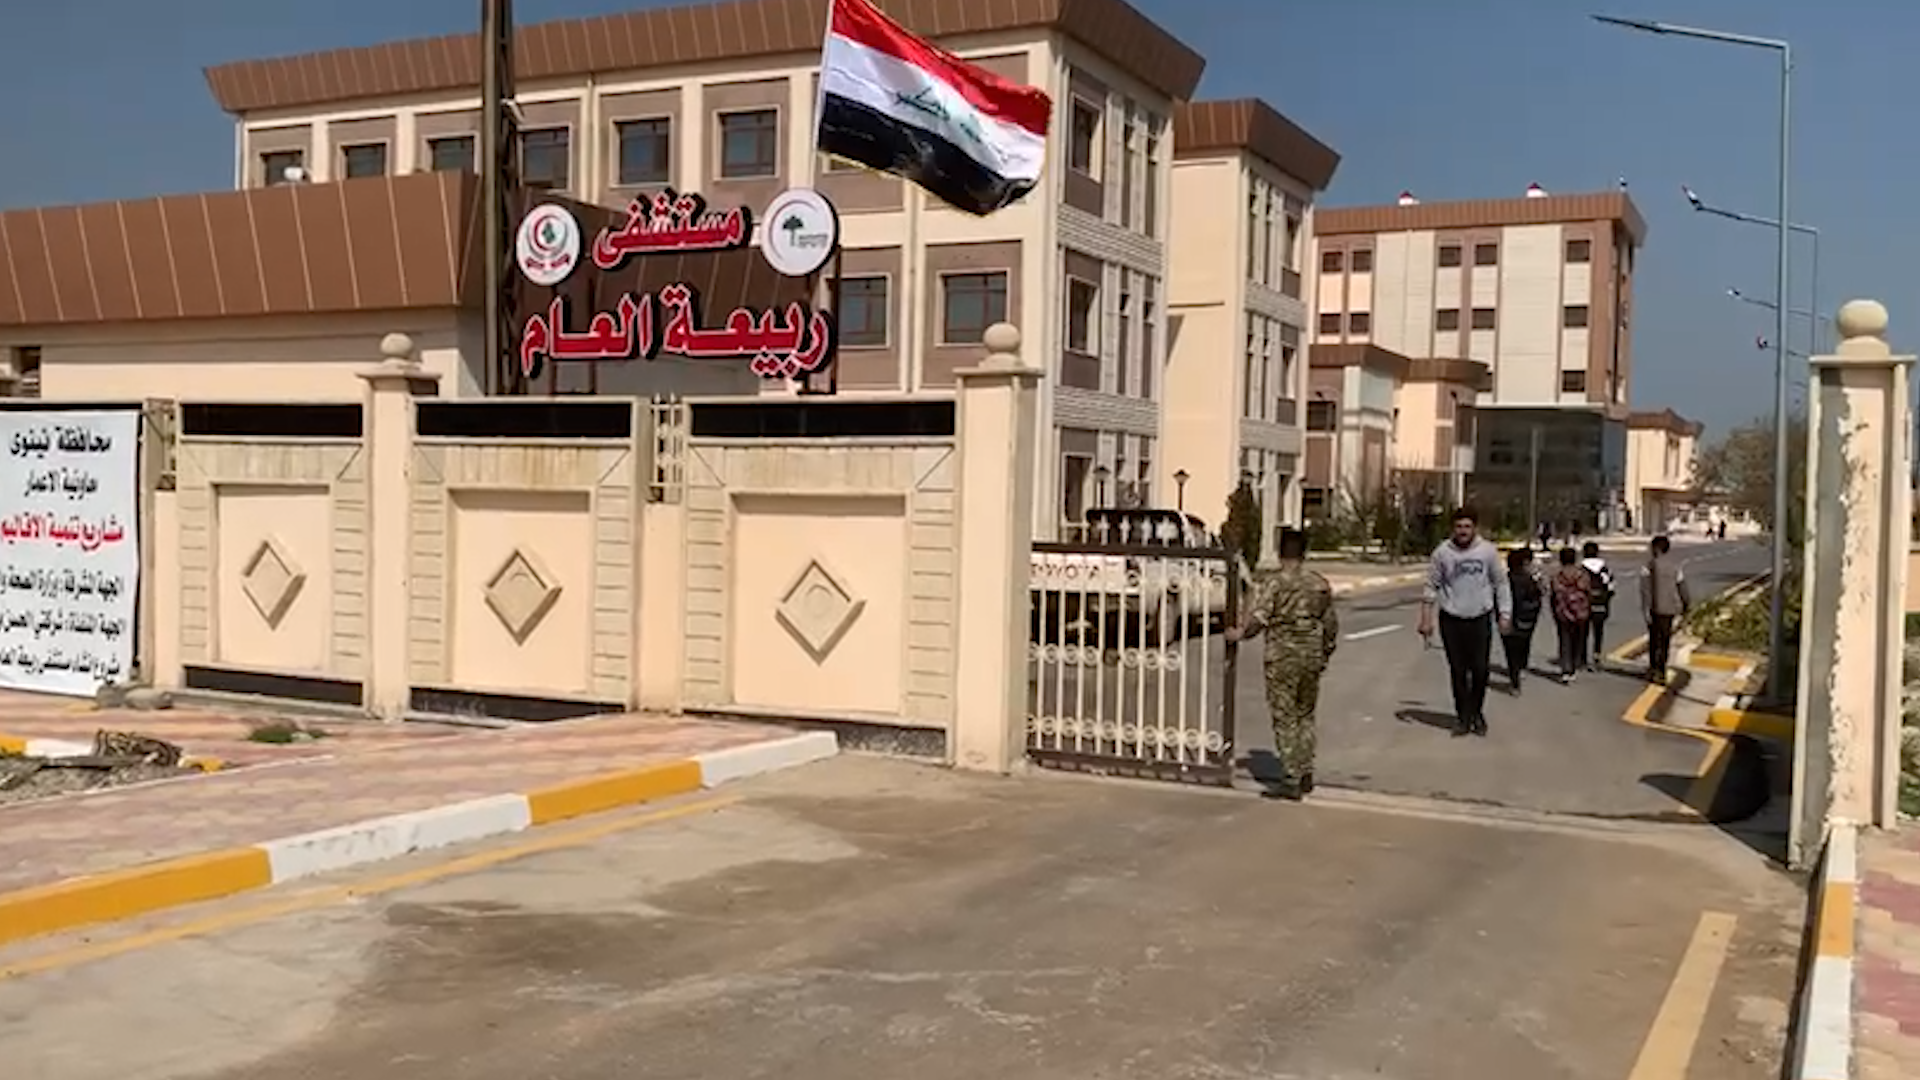 فيديو من داخل مستشفى ربيعة التي افتتحها السوداني اليوم أقصى غرب العراق